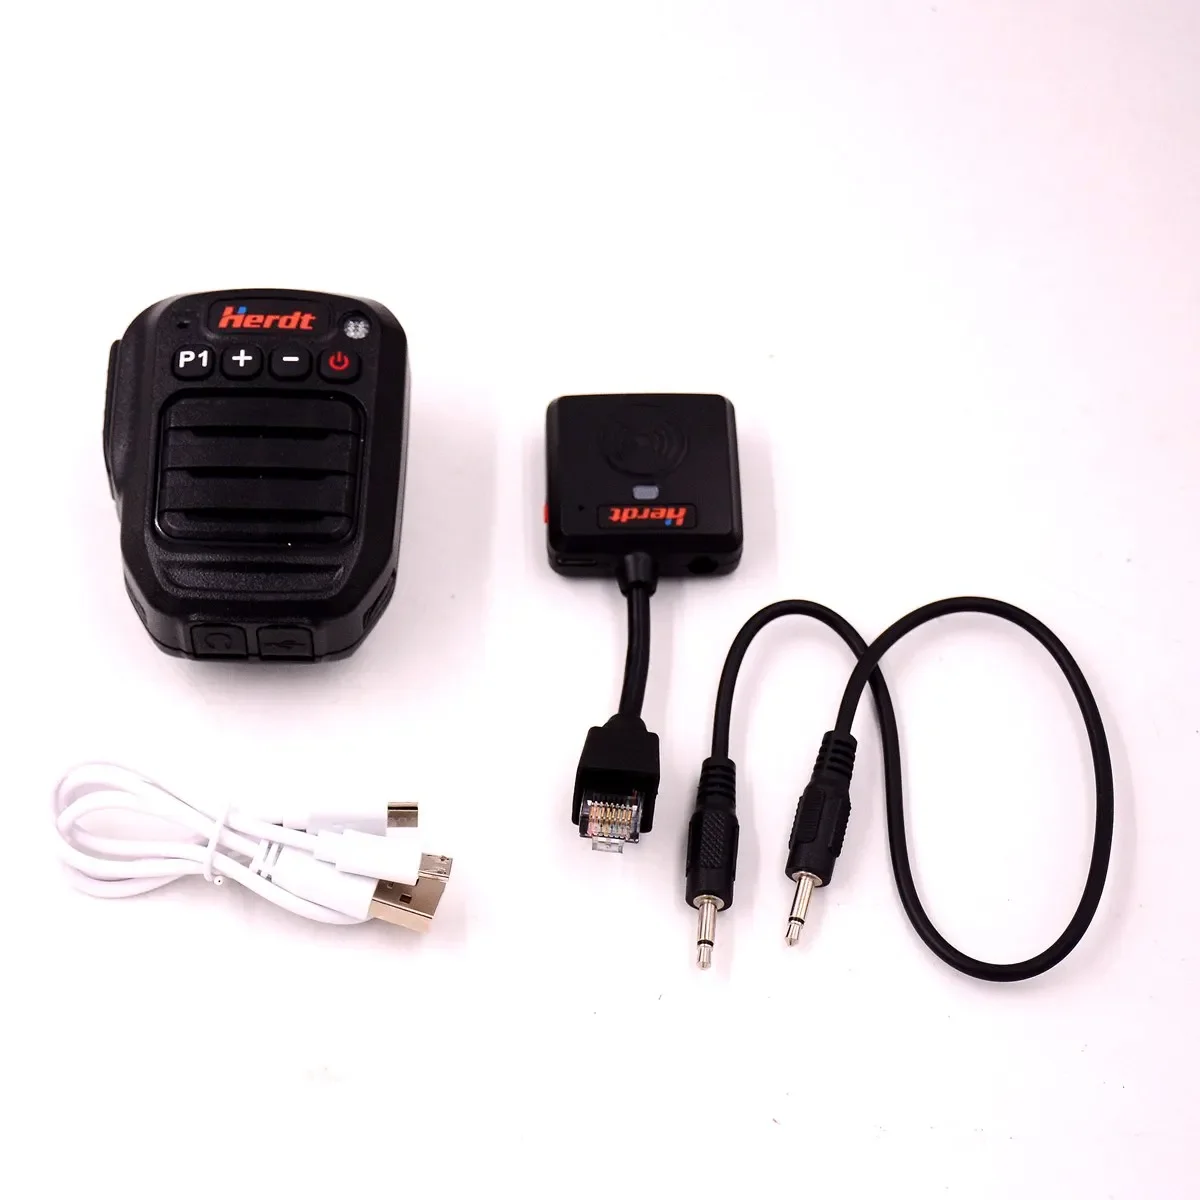 Microphone Bluetooth RJ45 à 8 broches, haut-parleur et adaptateur PTT pour Icom IC-2720 IC-2725E IC-208H, Radio amateur, Communication sans fil